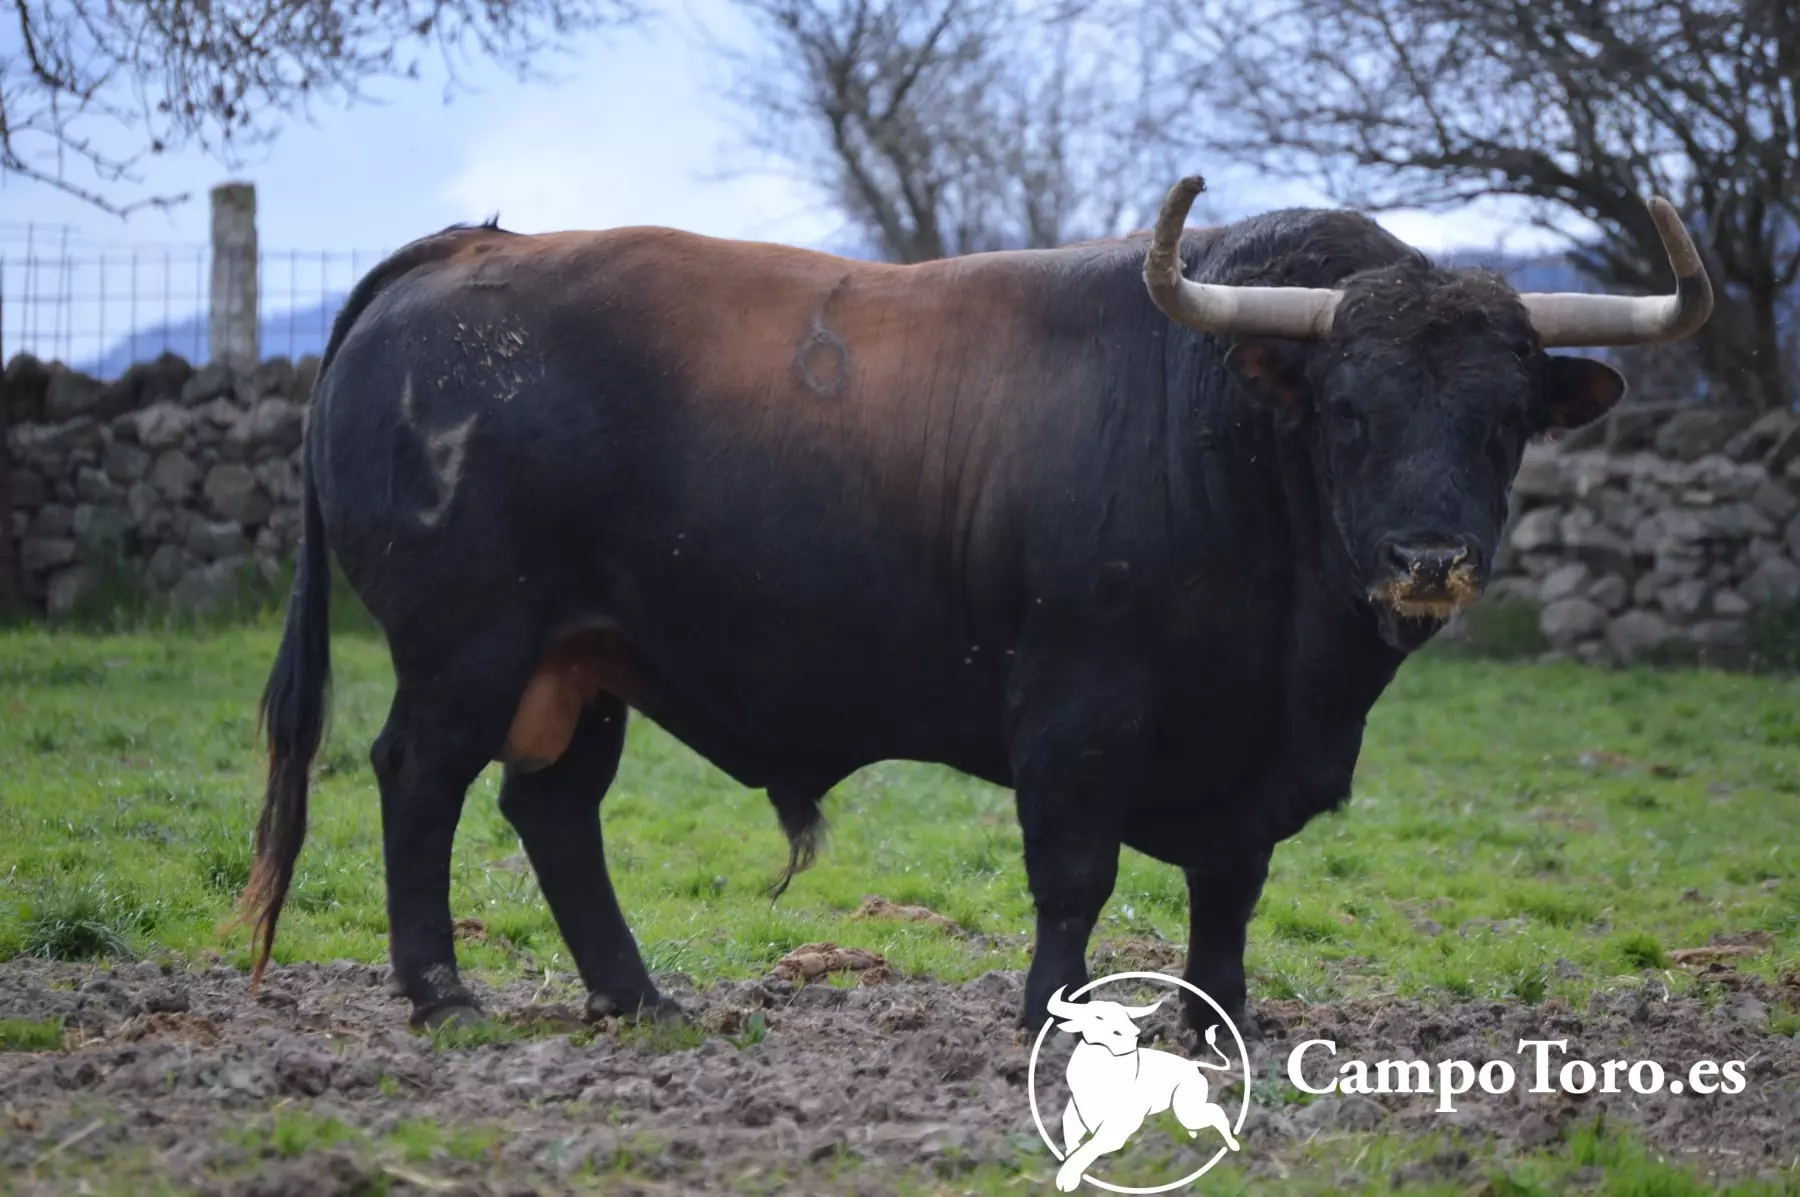 Brave bull ranch in Madrid